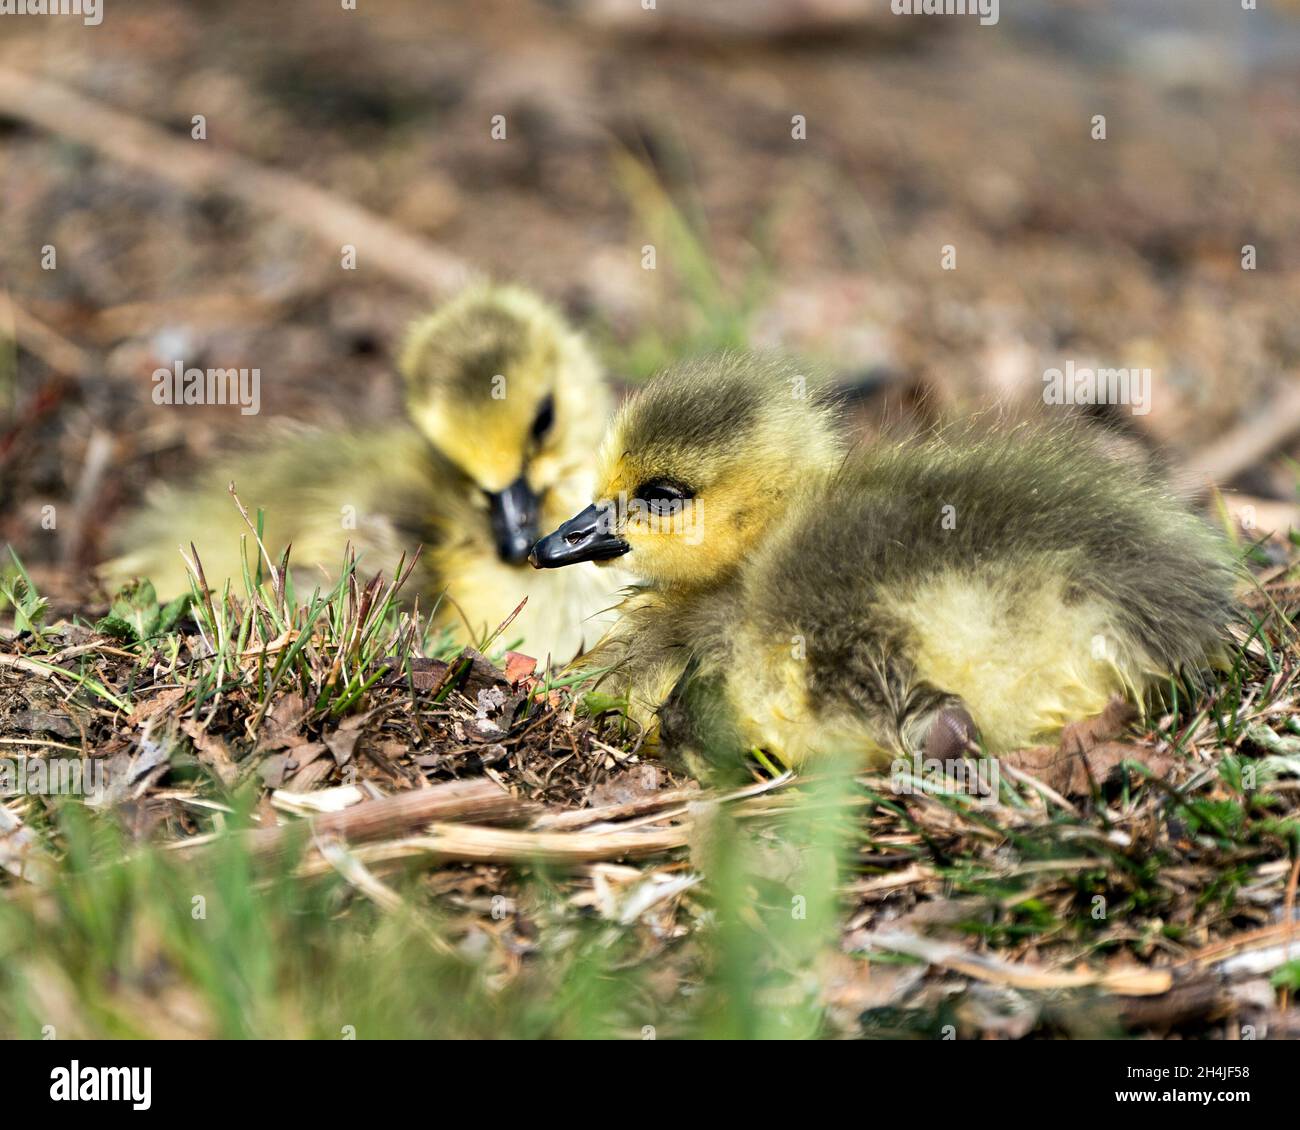 Bambini canadesi gosling primo piano profilo vista poggiare su erba nel loro ambiente e habitat. Immagine dell'oca del Canada. Immagine. Verticale. Foto. Foto Stock